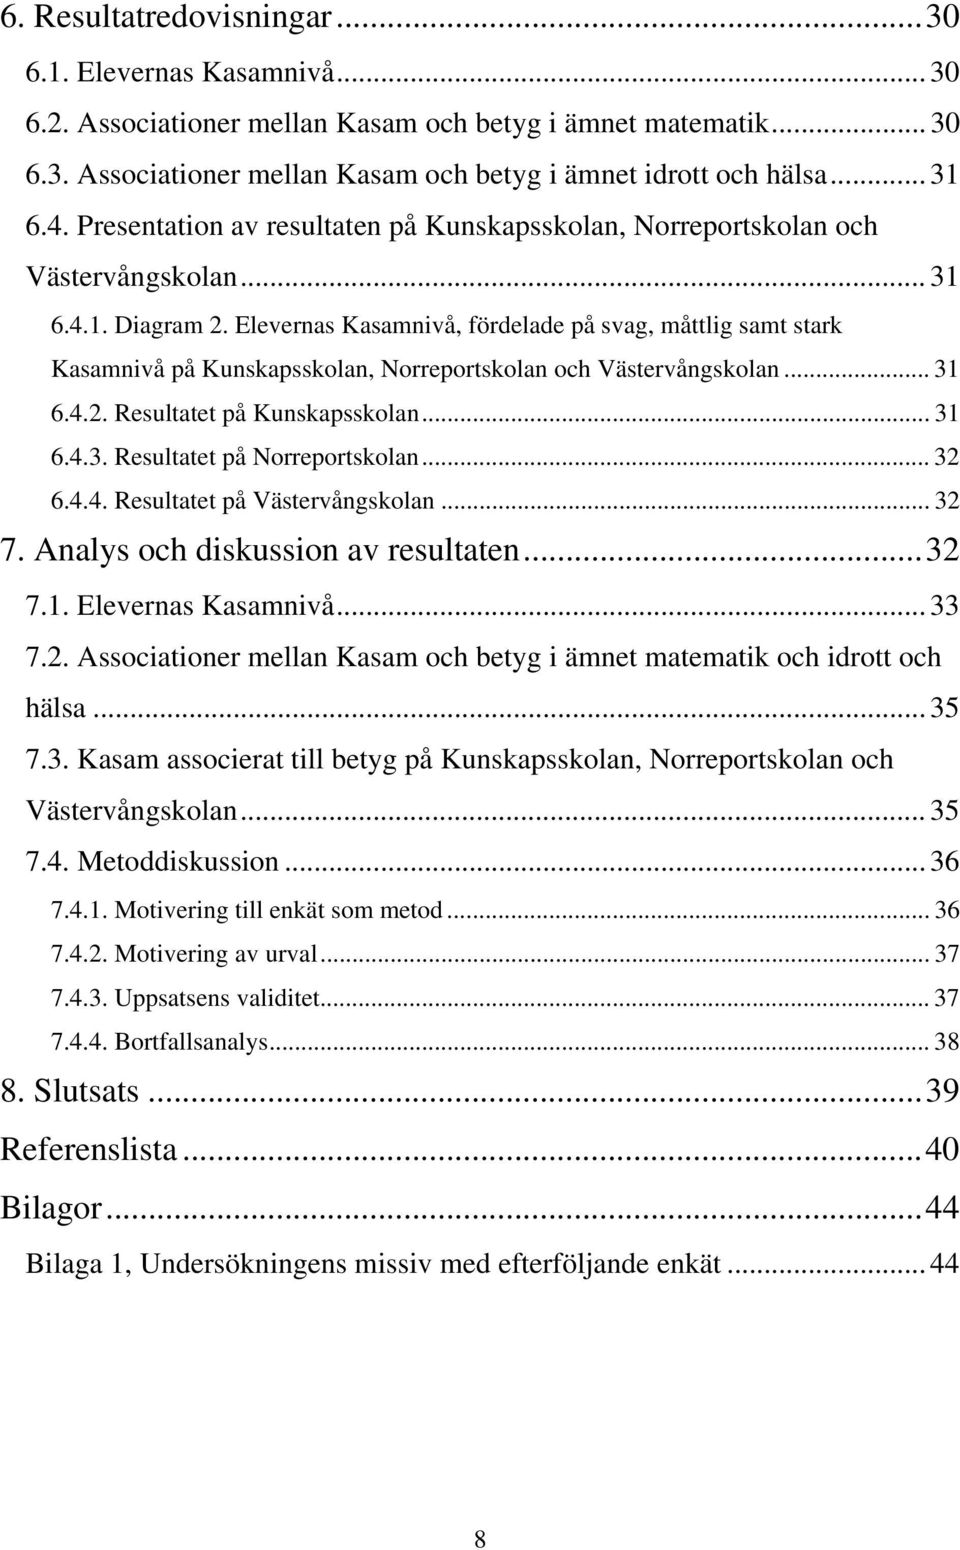 Elevernas Kasamnivå, fördelade på svag, måttlig samt stark Kasamnivå på Kunskapsskolan, Norreportskolan och Västervångskolan... 31 6.4.2. Resultatet på Kunskapsskolan... 31 6.4.3. Resultatet på Norreportskolan.